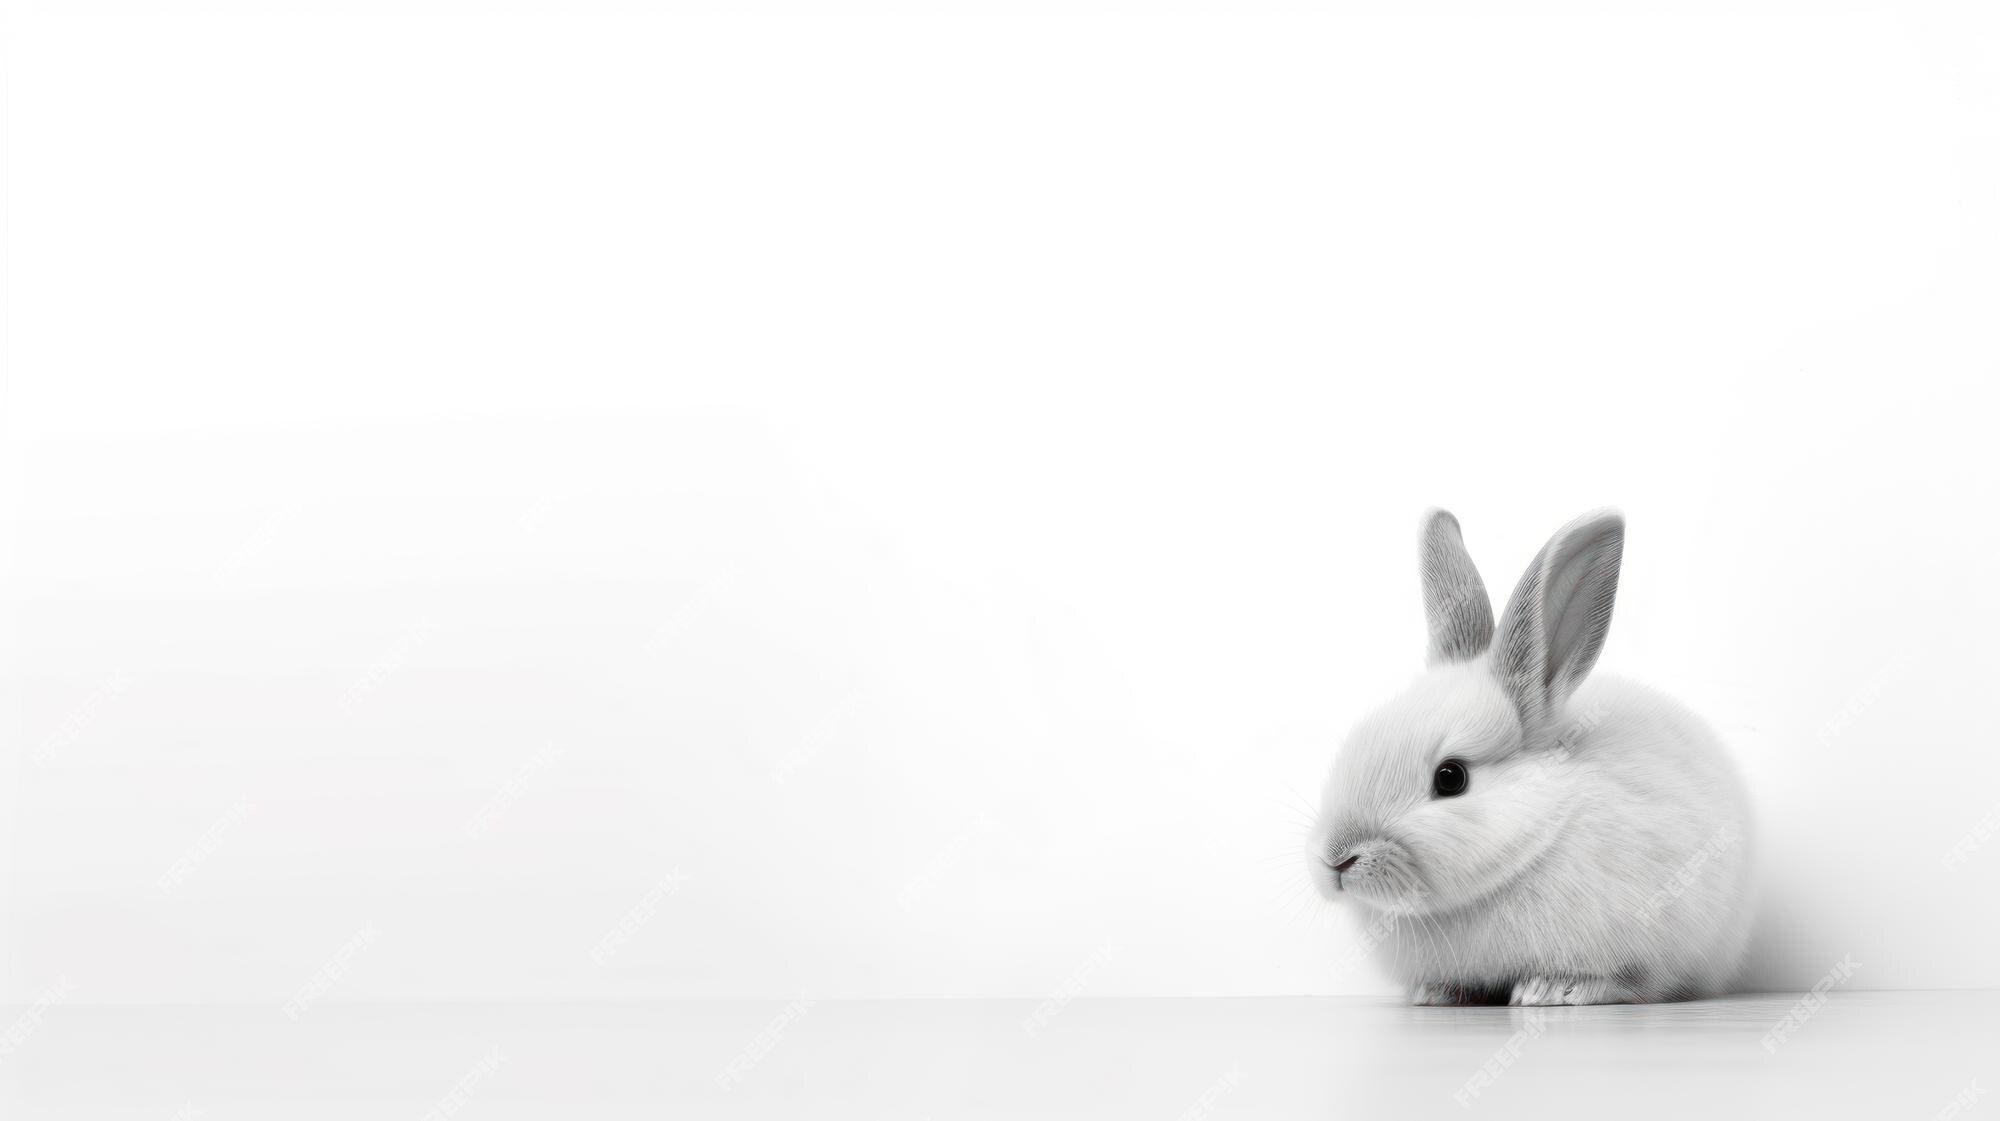  Kaninchen Hintergrundbild 2000x1121. Ein weißes kaninchen mit schwarzen ohren steht auf einem weißen tisch